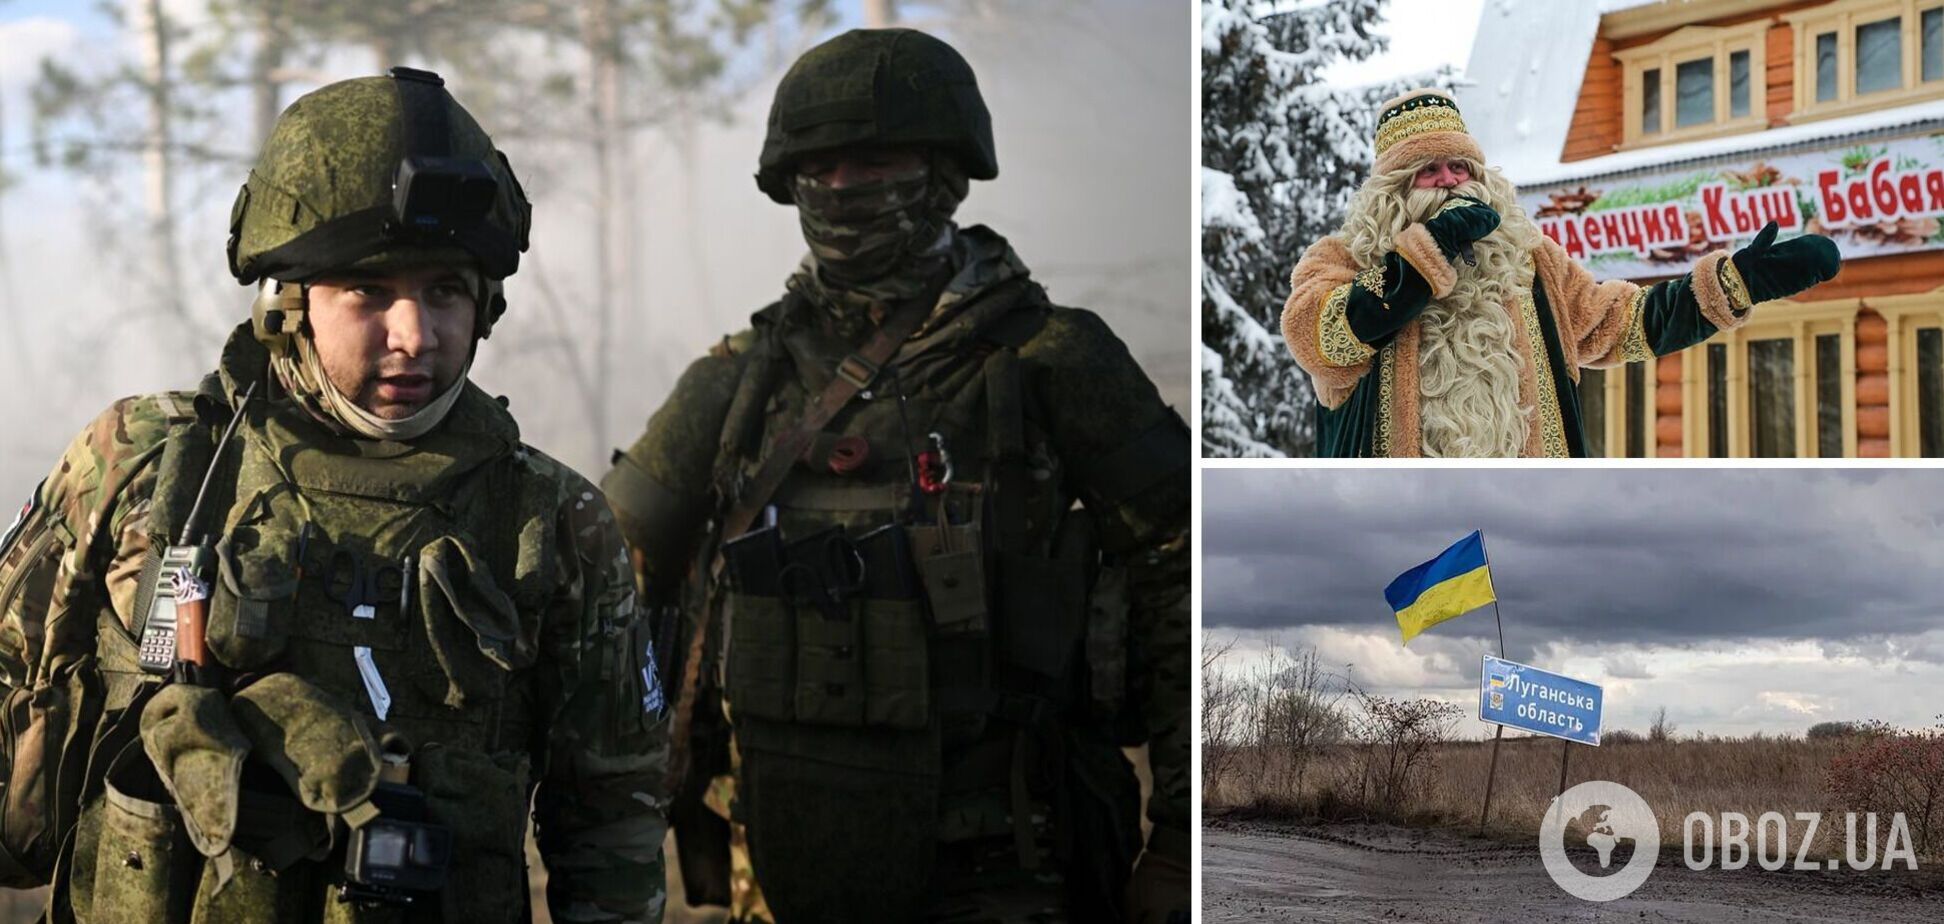 Киш Бабай замість Миколая: окупанти на Луганщині заборонили 'українське' свято